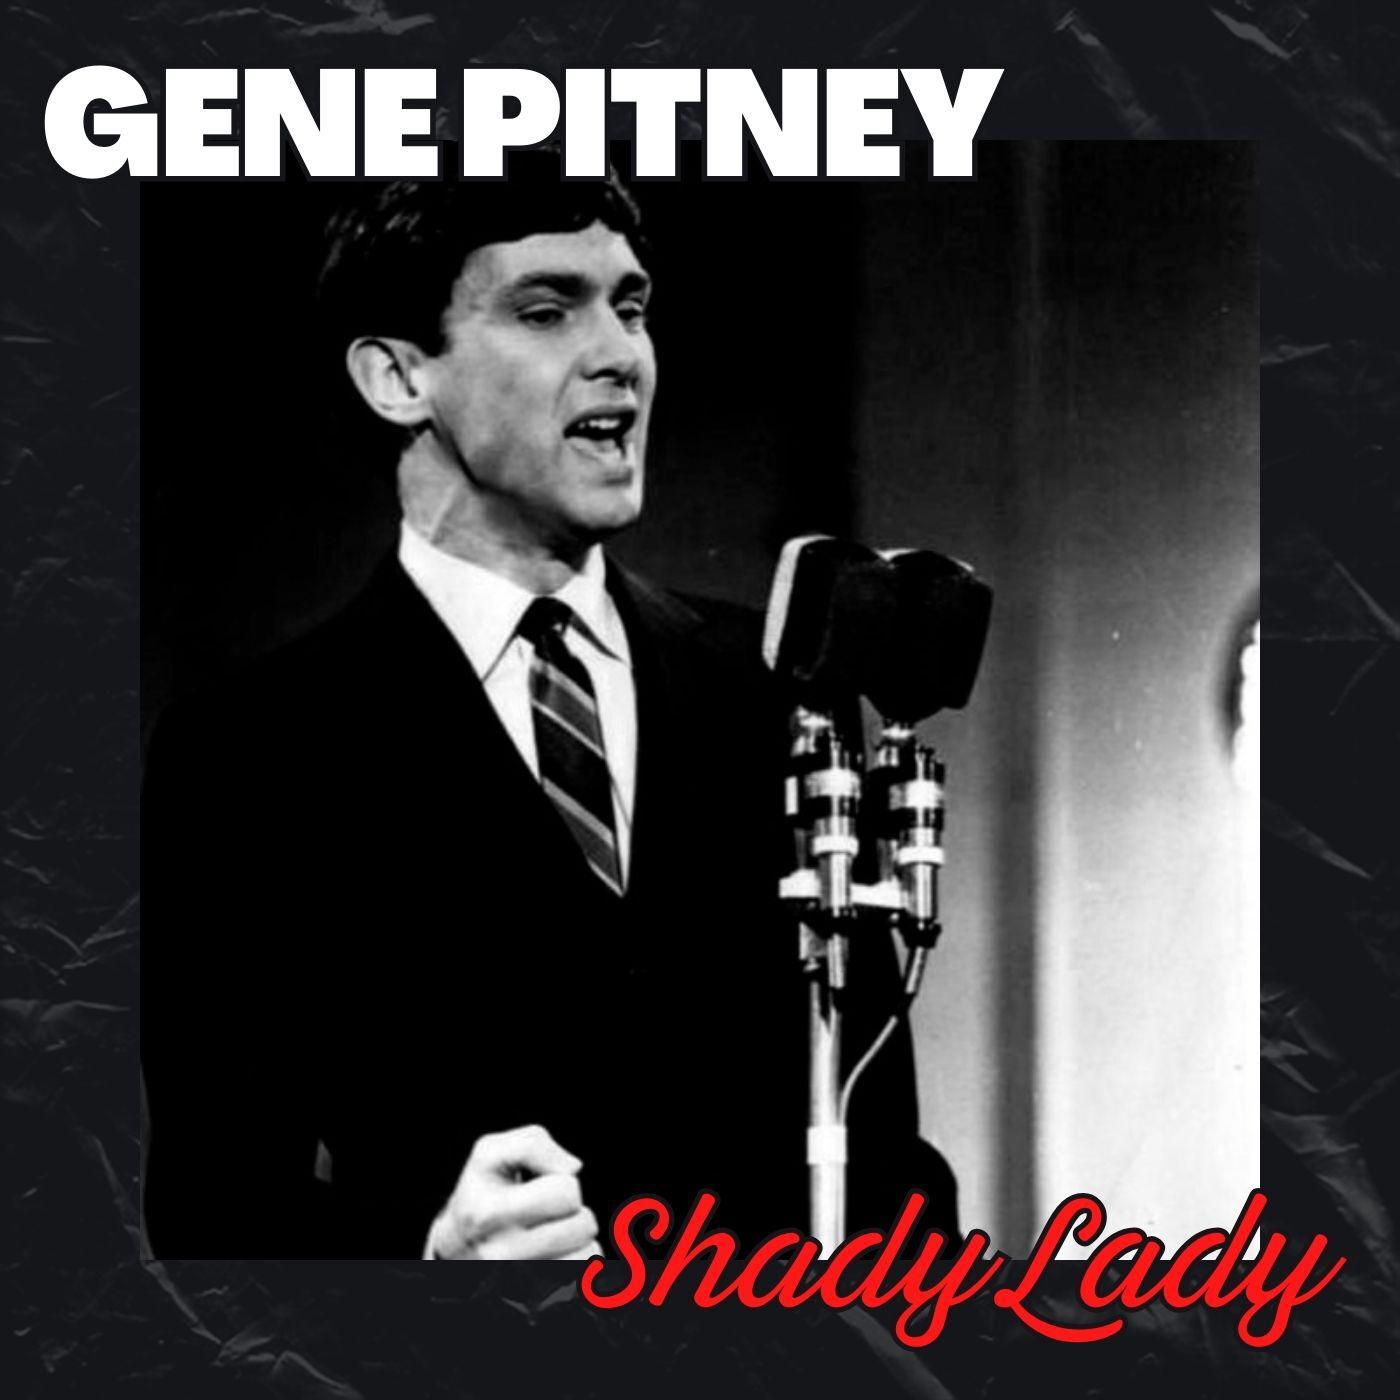 Gene Pitney - Every Breath I Take